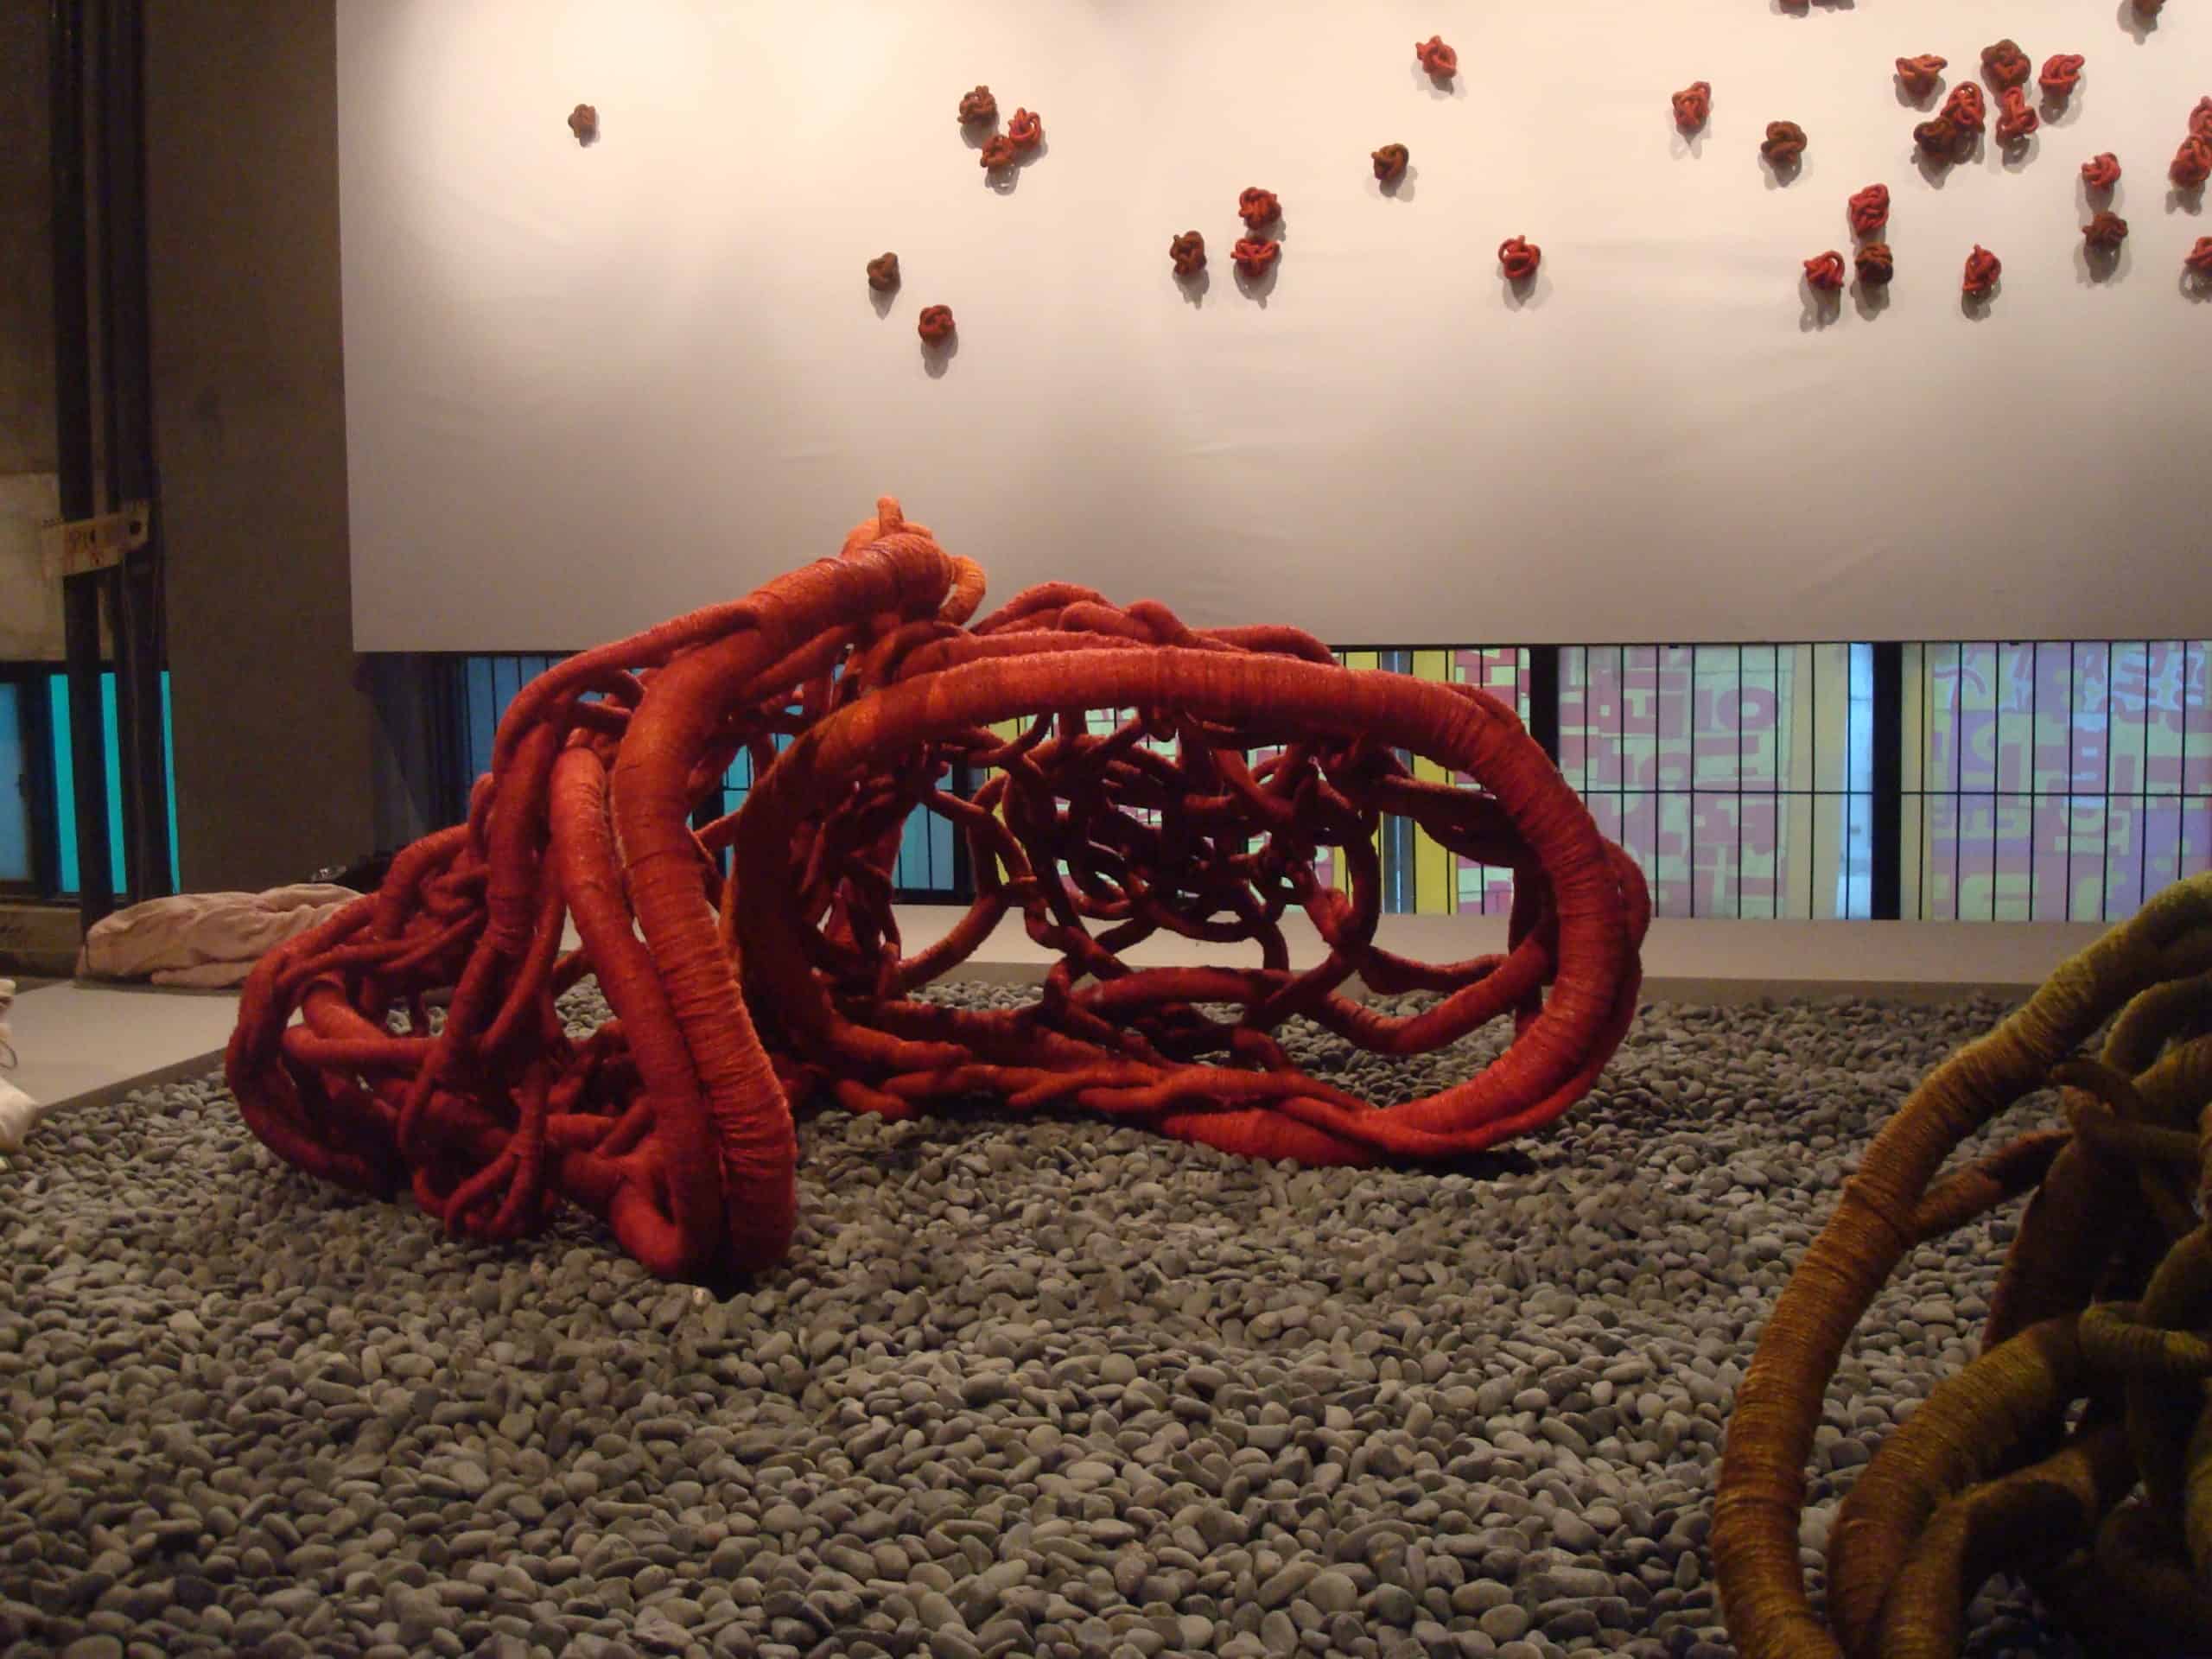 red linen sculptures at Cheongju International Craft biennale, Korea by Aude Franjou